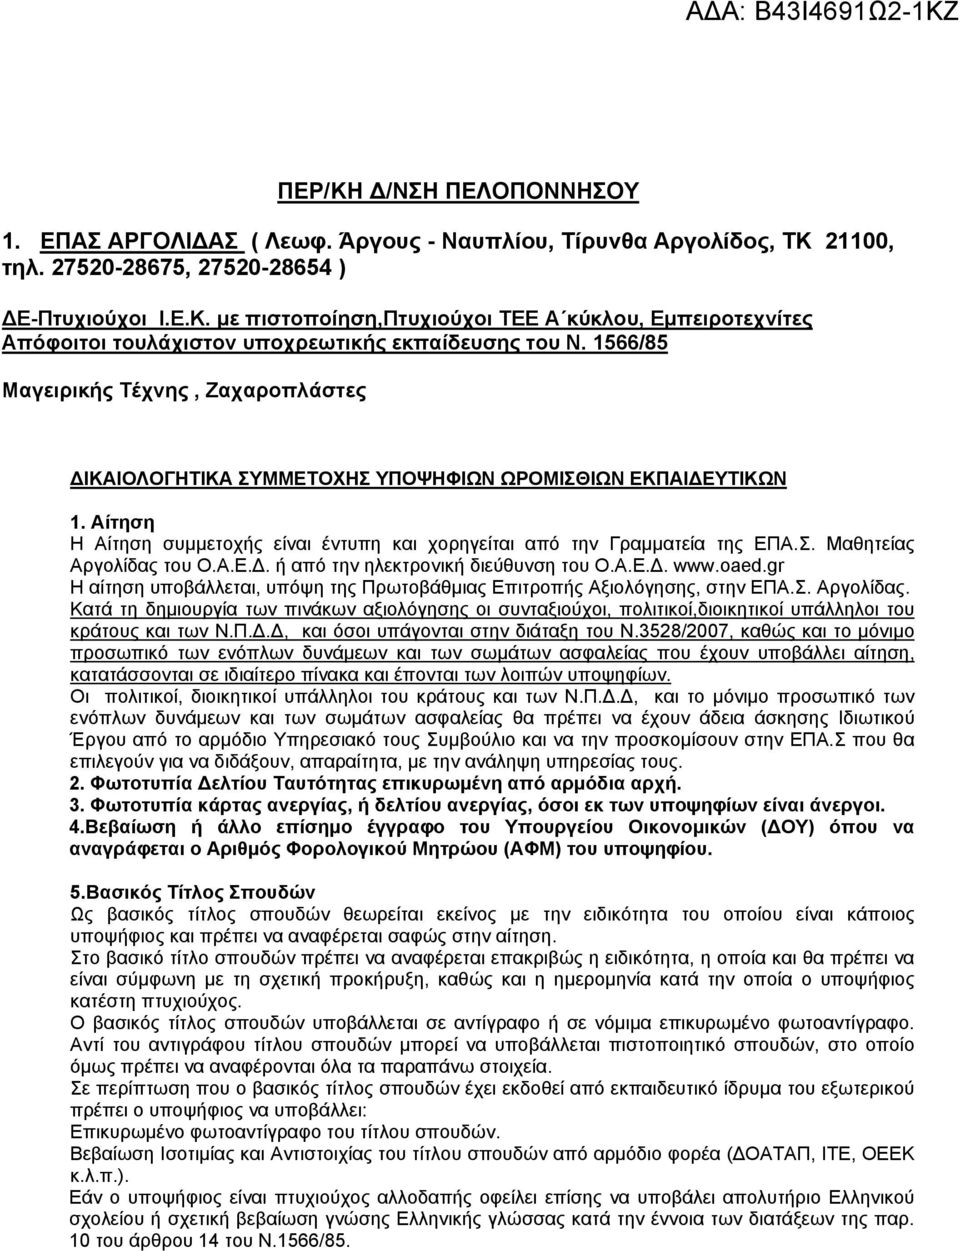 Α.Ε.Δ. ή από την ηλεκτρονική διεύθυνση του Ο.Α.Ε.Δ. www.oaed.gr Η αίτηση υποβάλλεται, υπόψη της Πρωτοβάθμιας Επιτροπής Αξιολόγησης, στην ΕΠΑ.Σ. Αργολίδας.